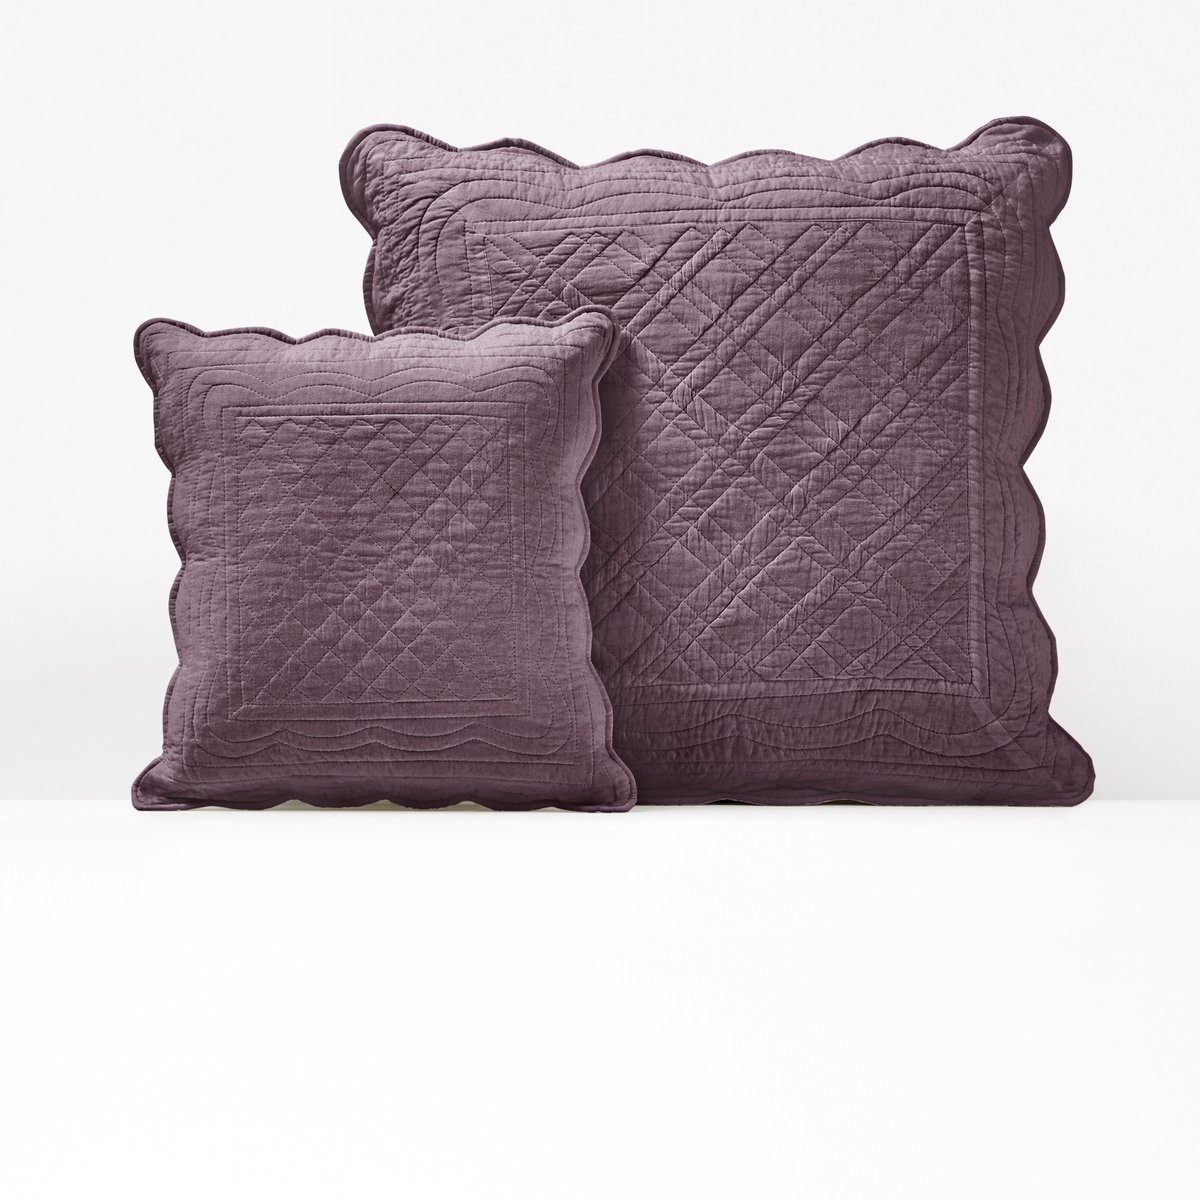 Чехол LaRedoute На подушку или подушку-валик из хлопка SCENARIO 65 x 65 см фиолетовый, размер 65 x 65 см - фото 1